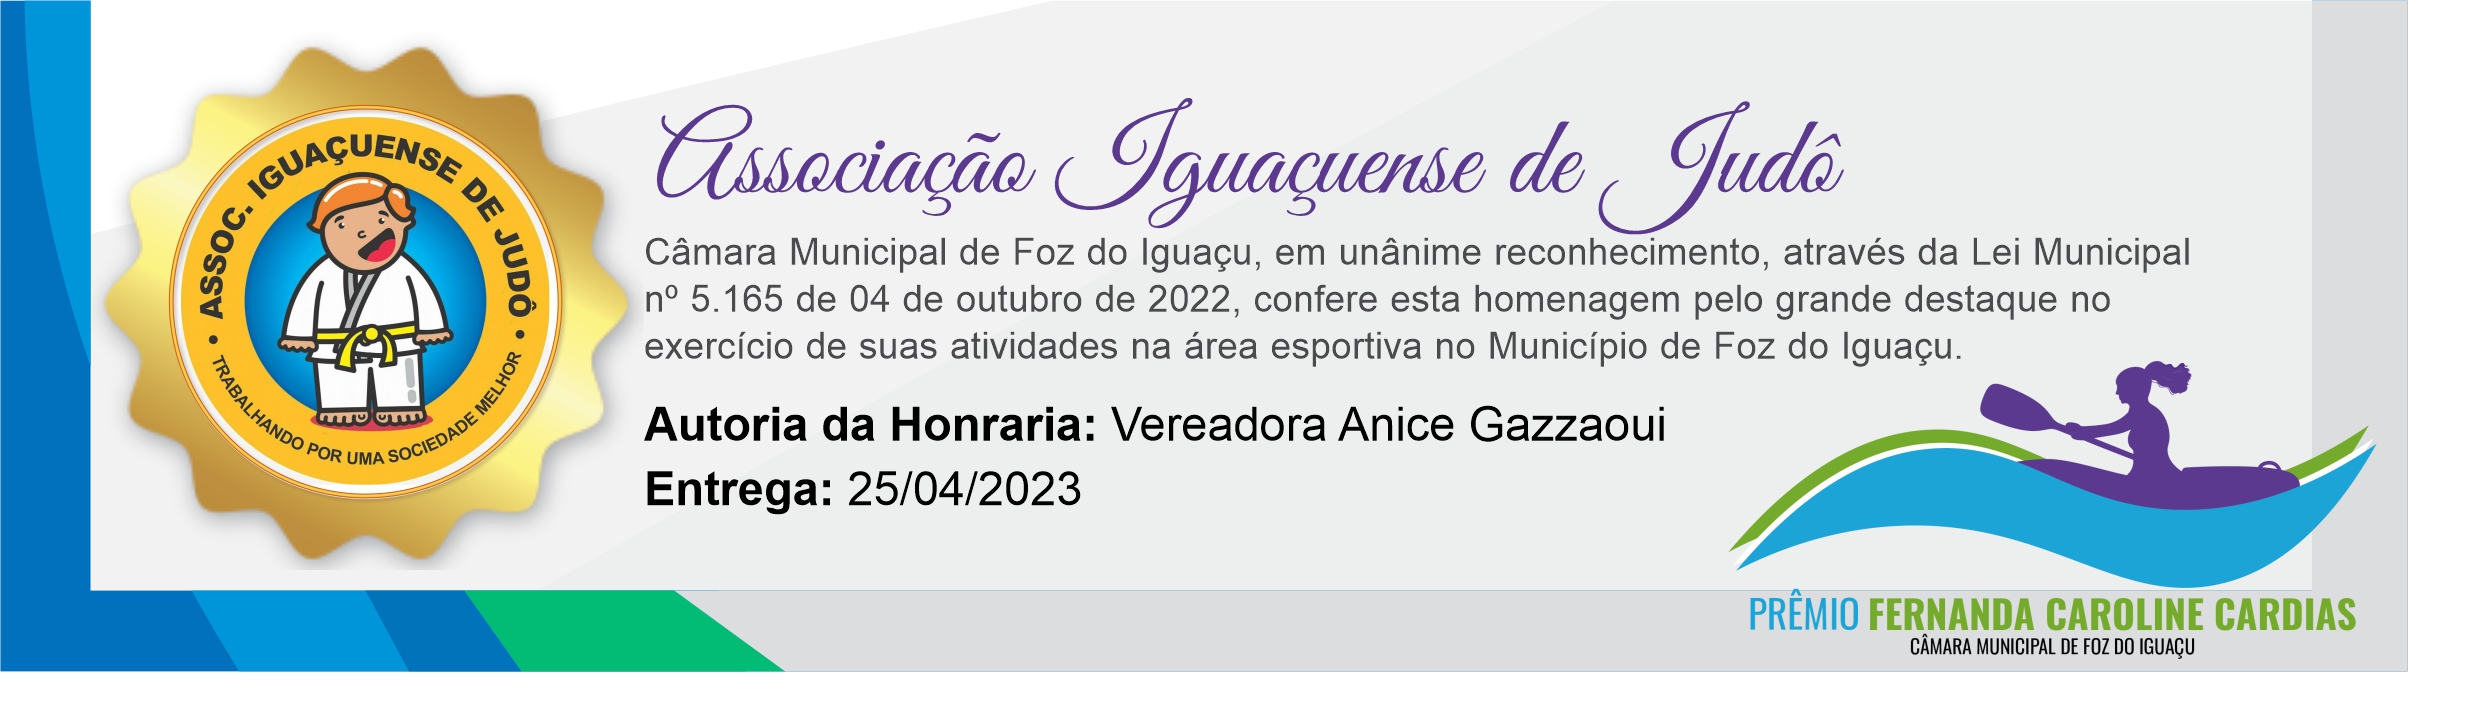 Associação Iguaçuense de Judô